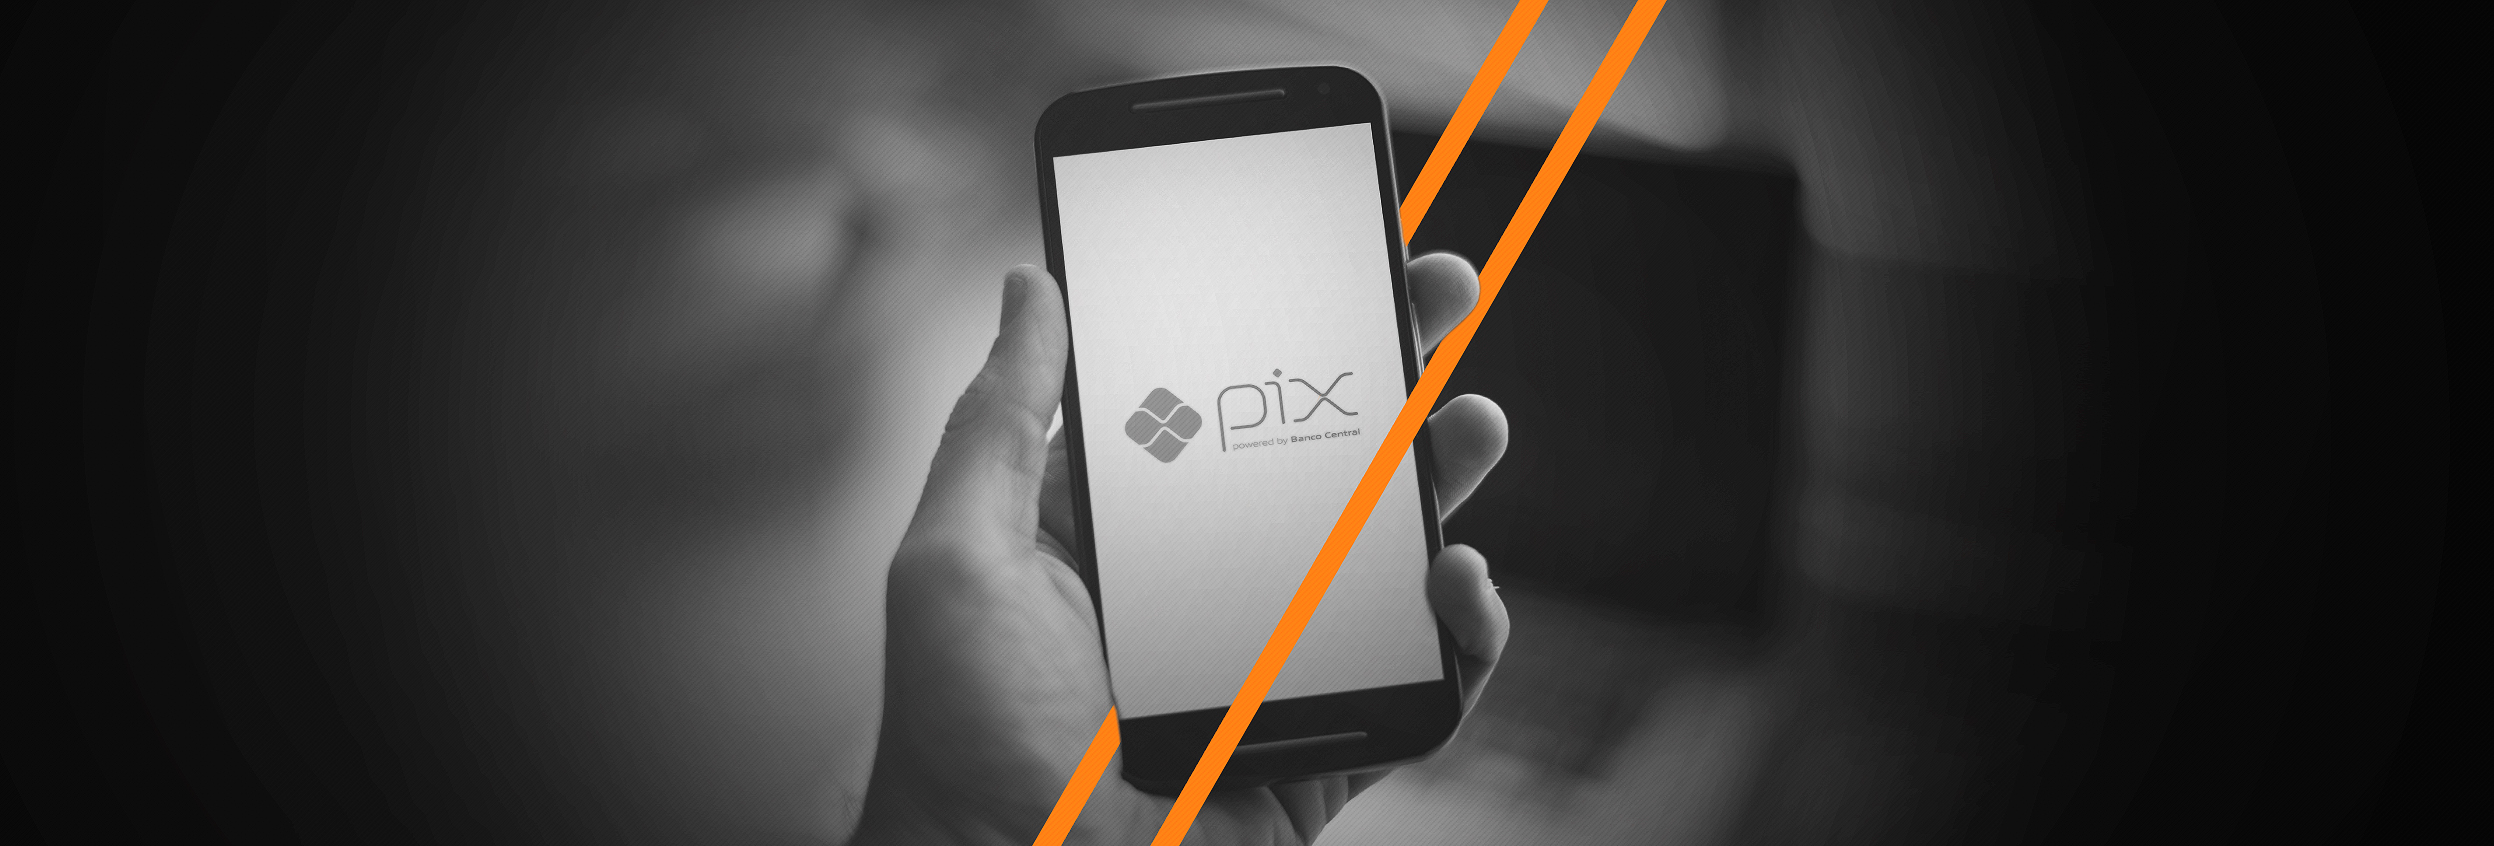 Pix o novo sistema de pagamento instantâneo